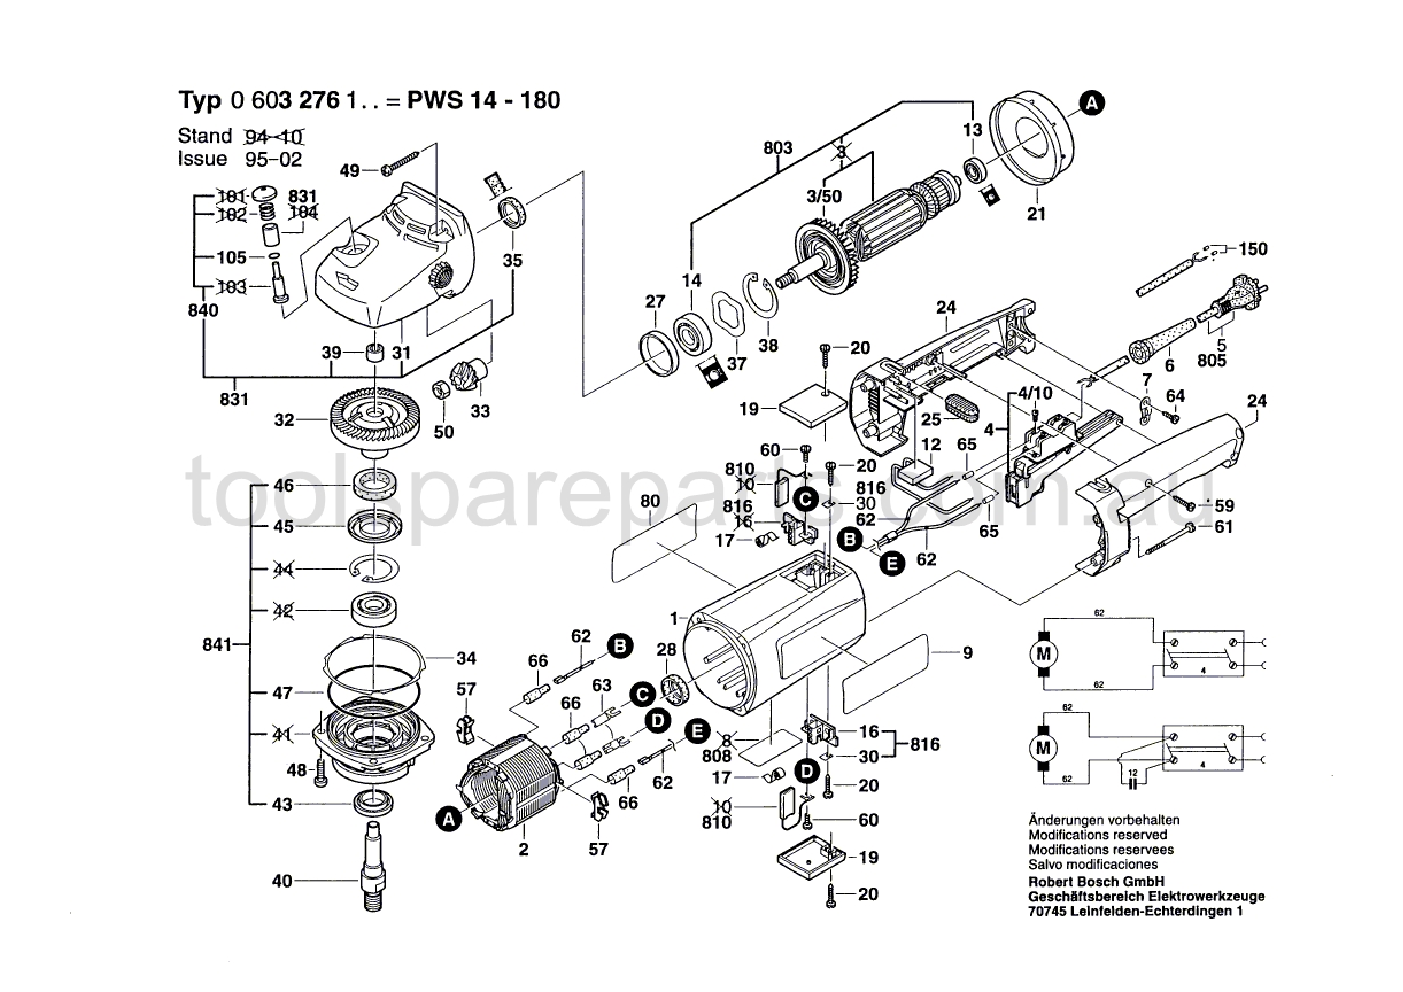 Bosch PWS 14-180 0603276137  Diagram 1